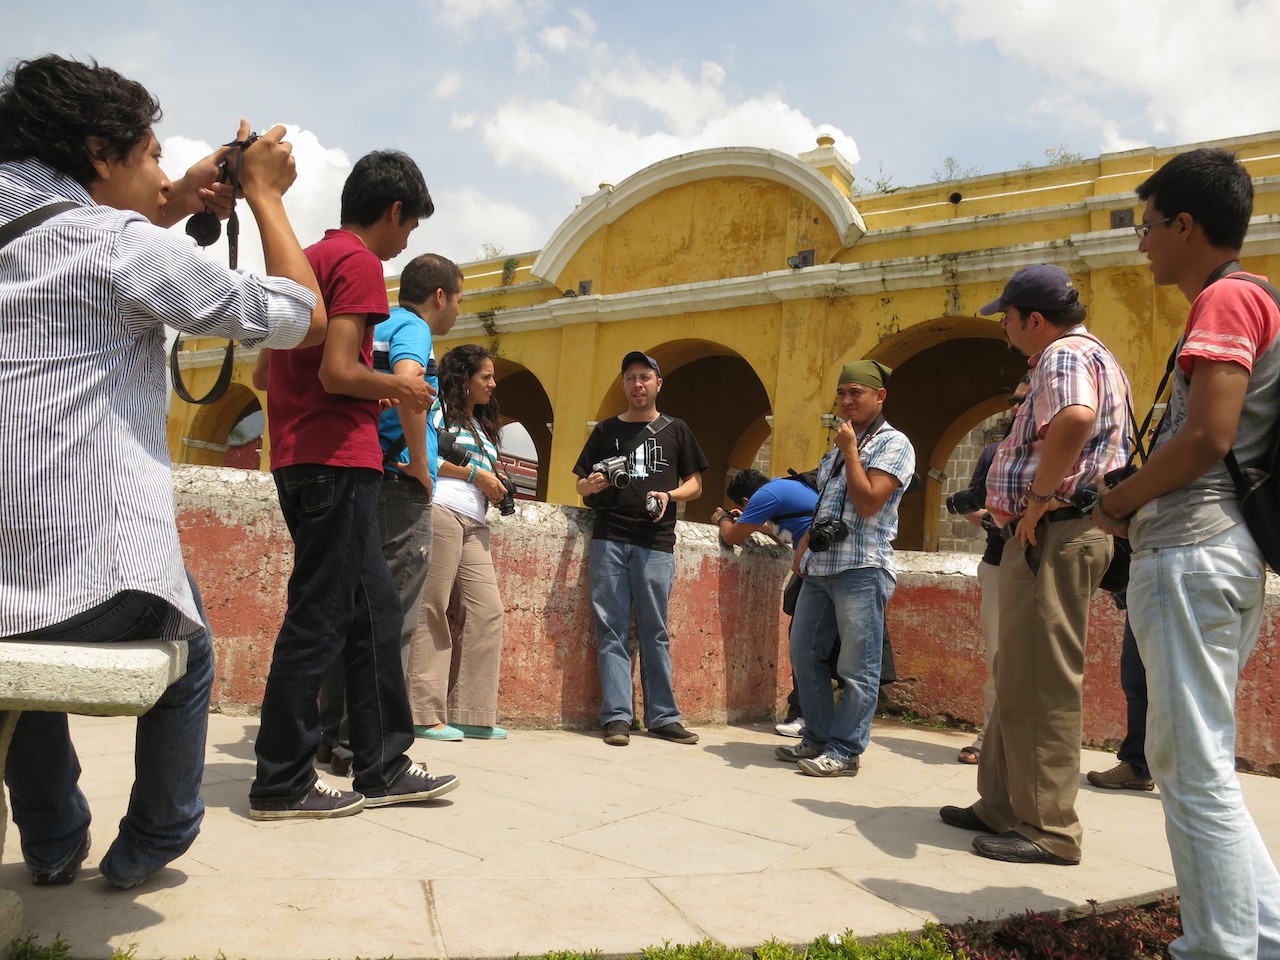 Reseña de la caminata fotográfica Street Photography en La Antigua Guatemala